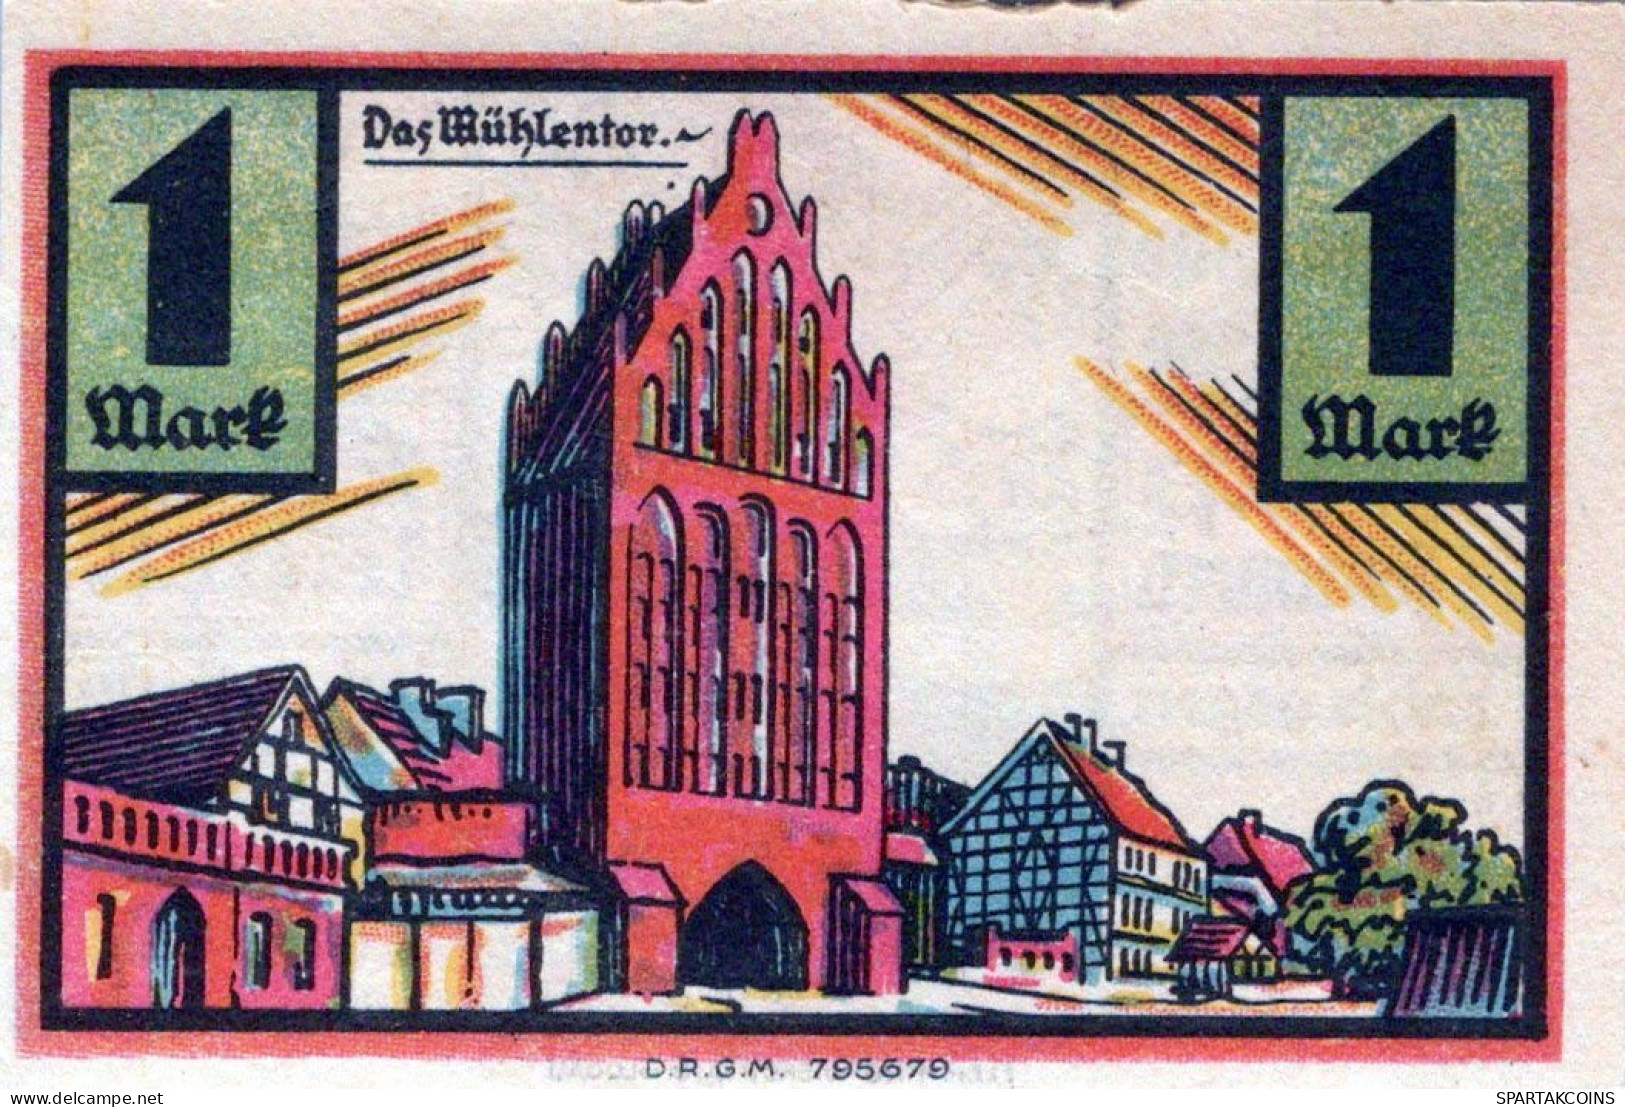 1 MARK 1922 Stadt STOLP Pomerania UNC DEUTSCHLAND Notgeld Banknote #PD346 - [11] Local Banknote Issues